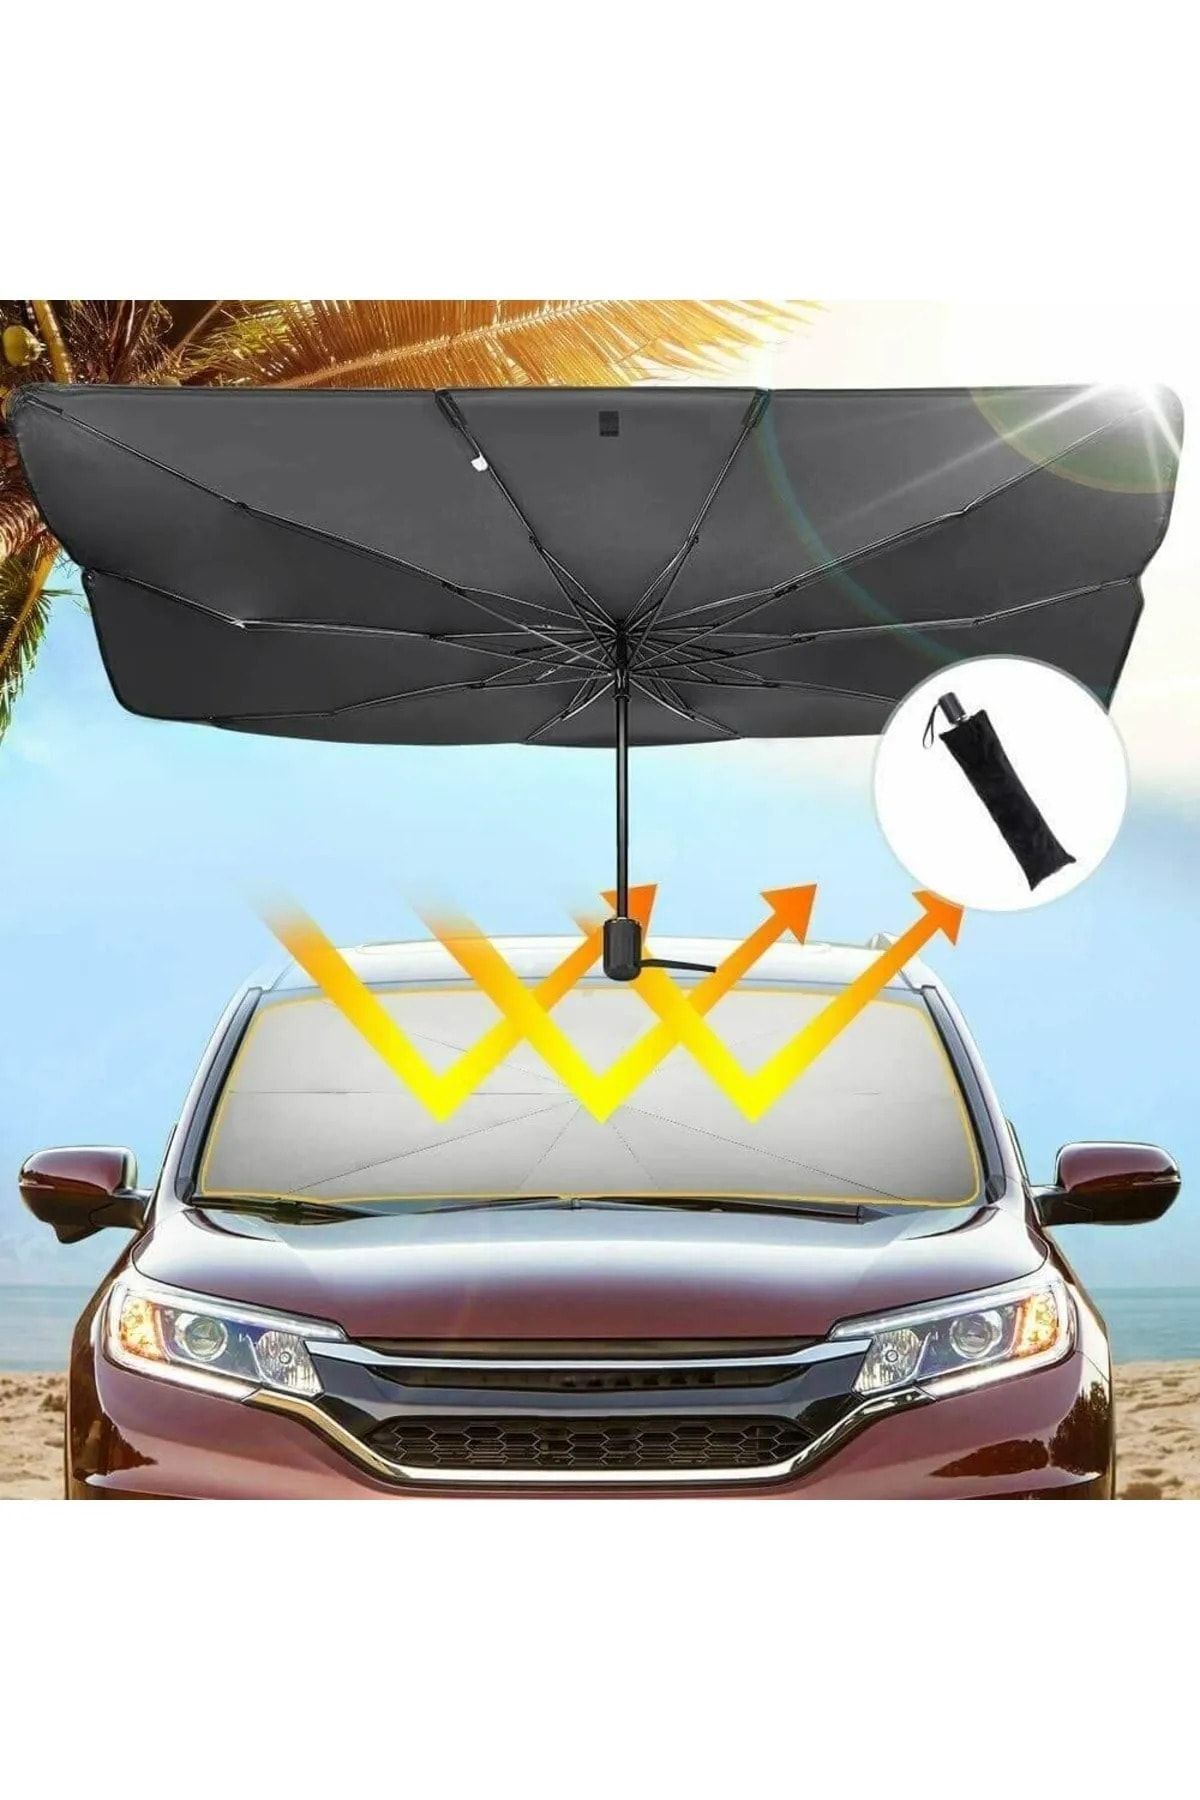 Universal Infiniti Q50 Araba Ön Cam Güneşlik Katlanabilir Güneşlik Şemsiye Ön Cam Gölgelik